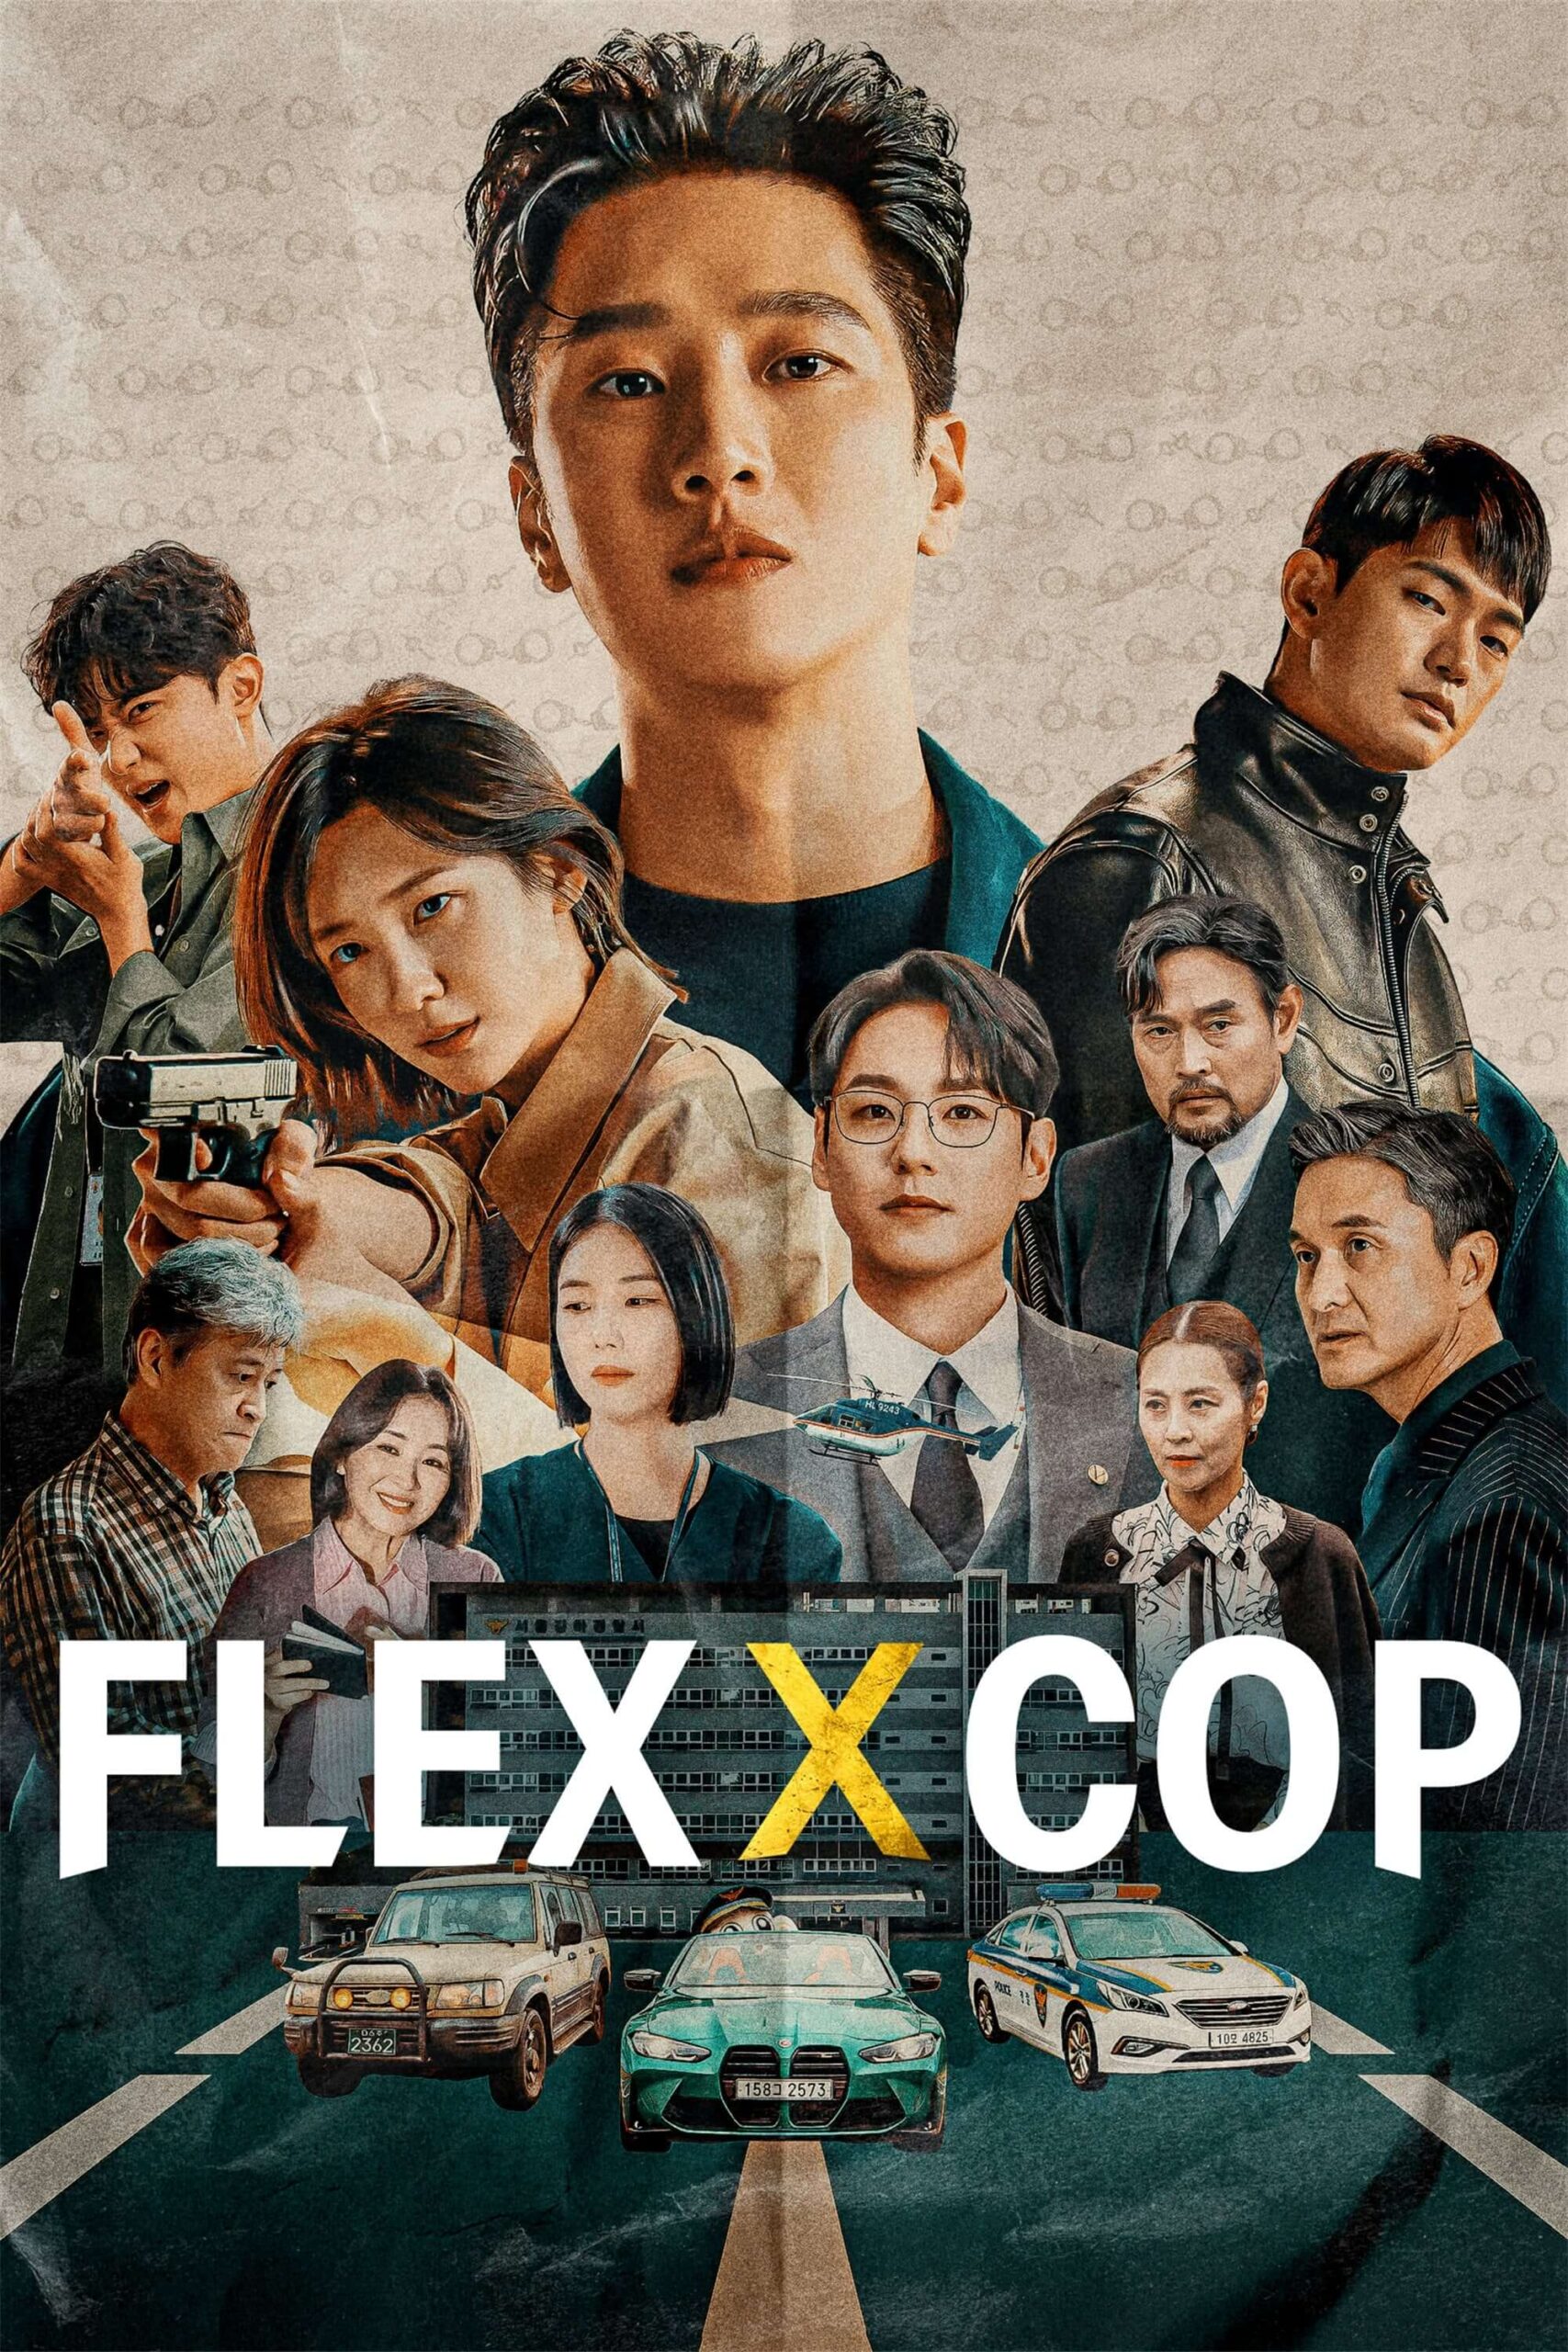 خرپول و کارآگاه (Flex x Cop)